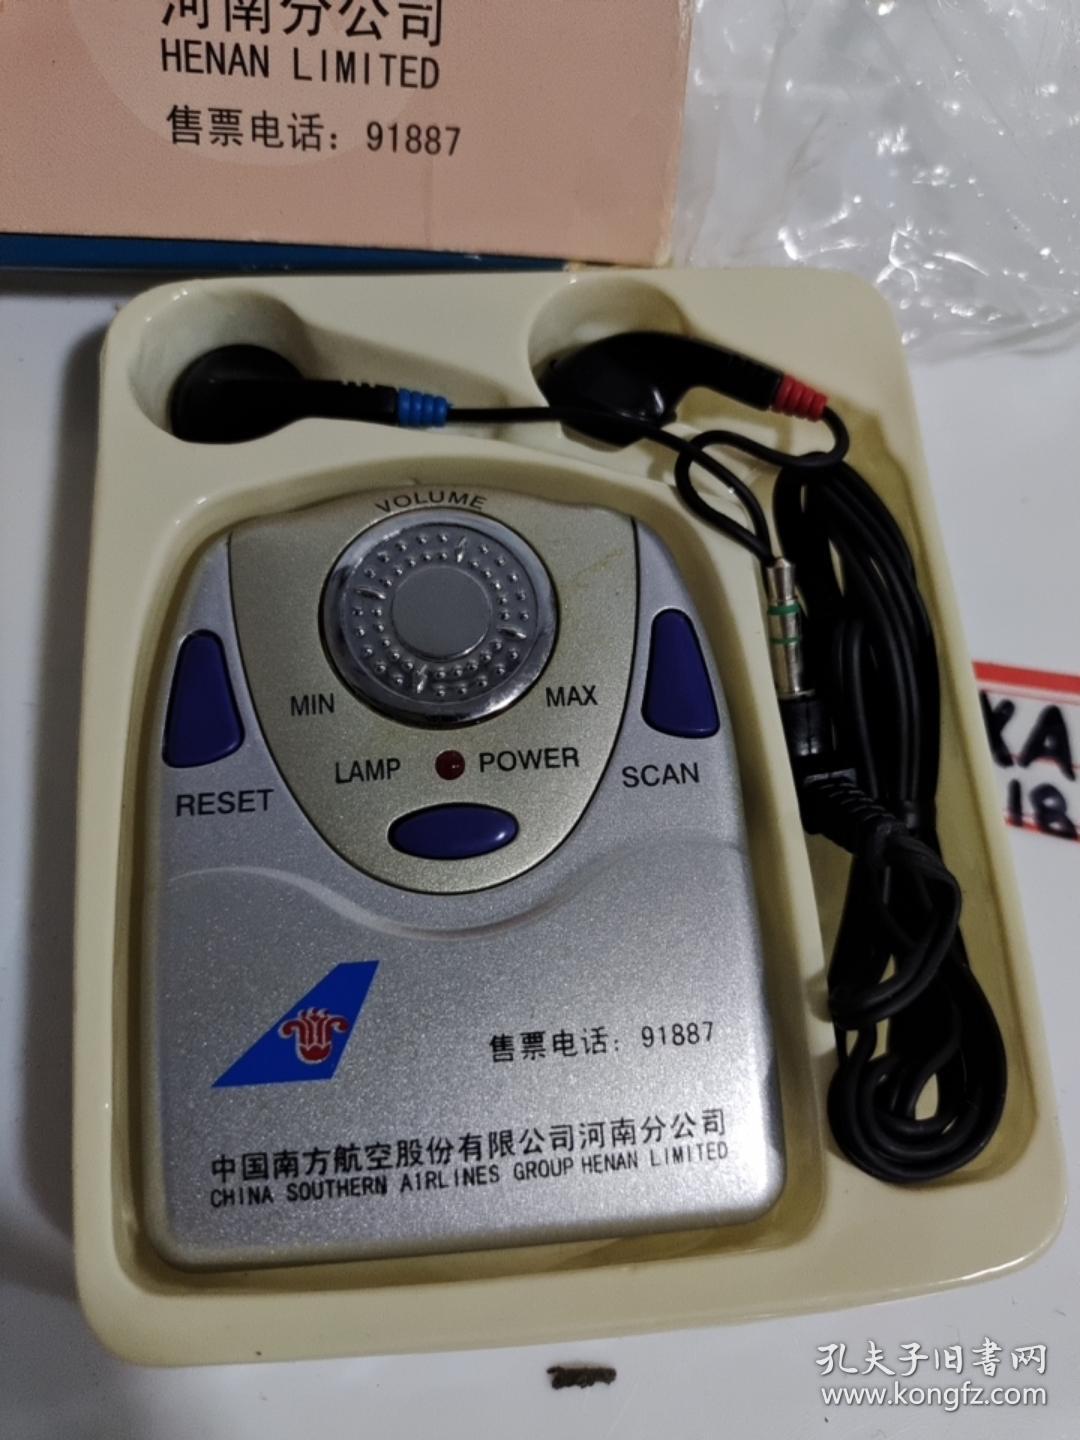 中国南方航公司赠：RS-918收音机